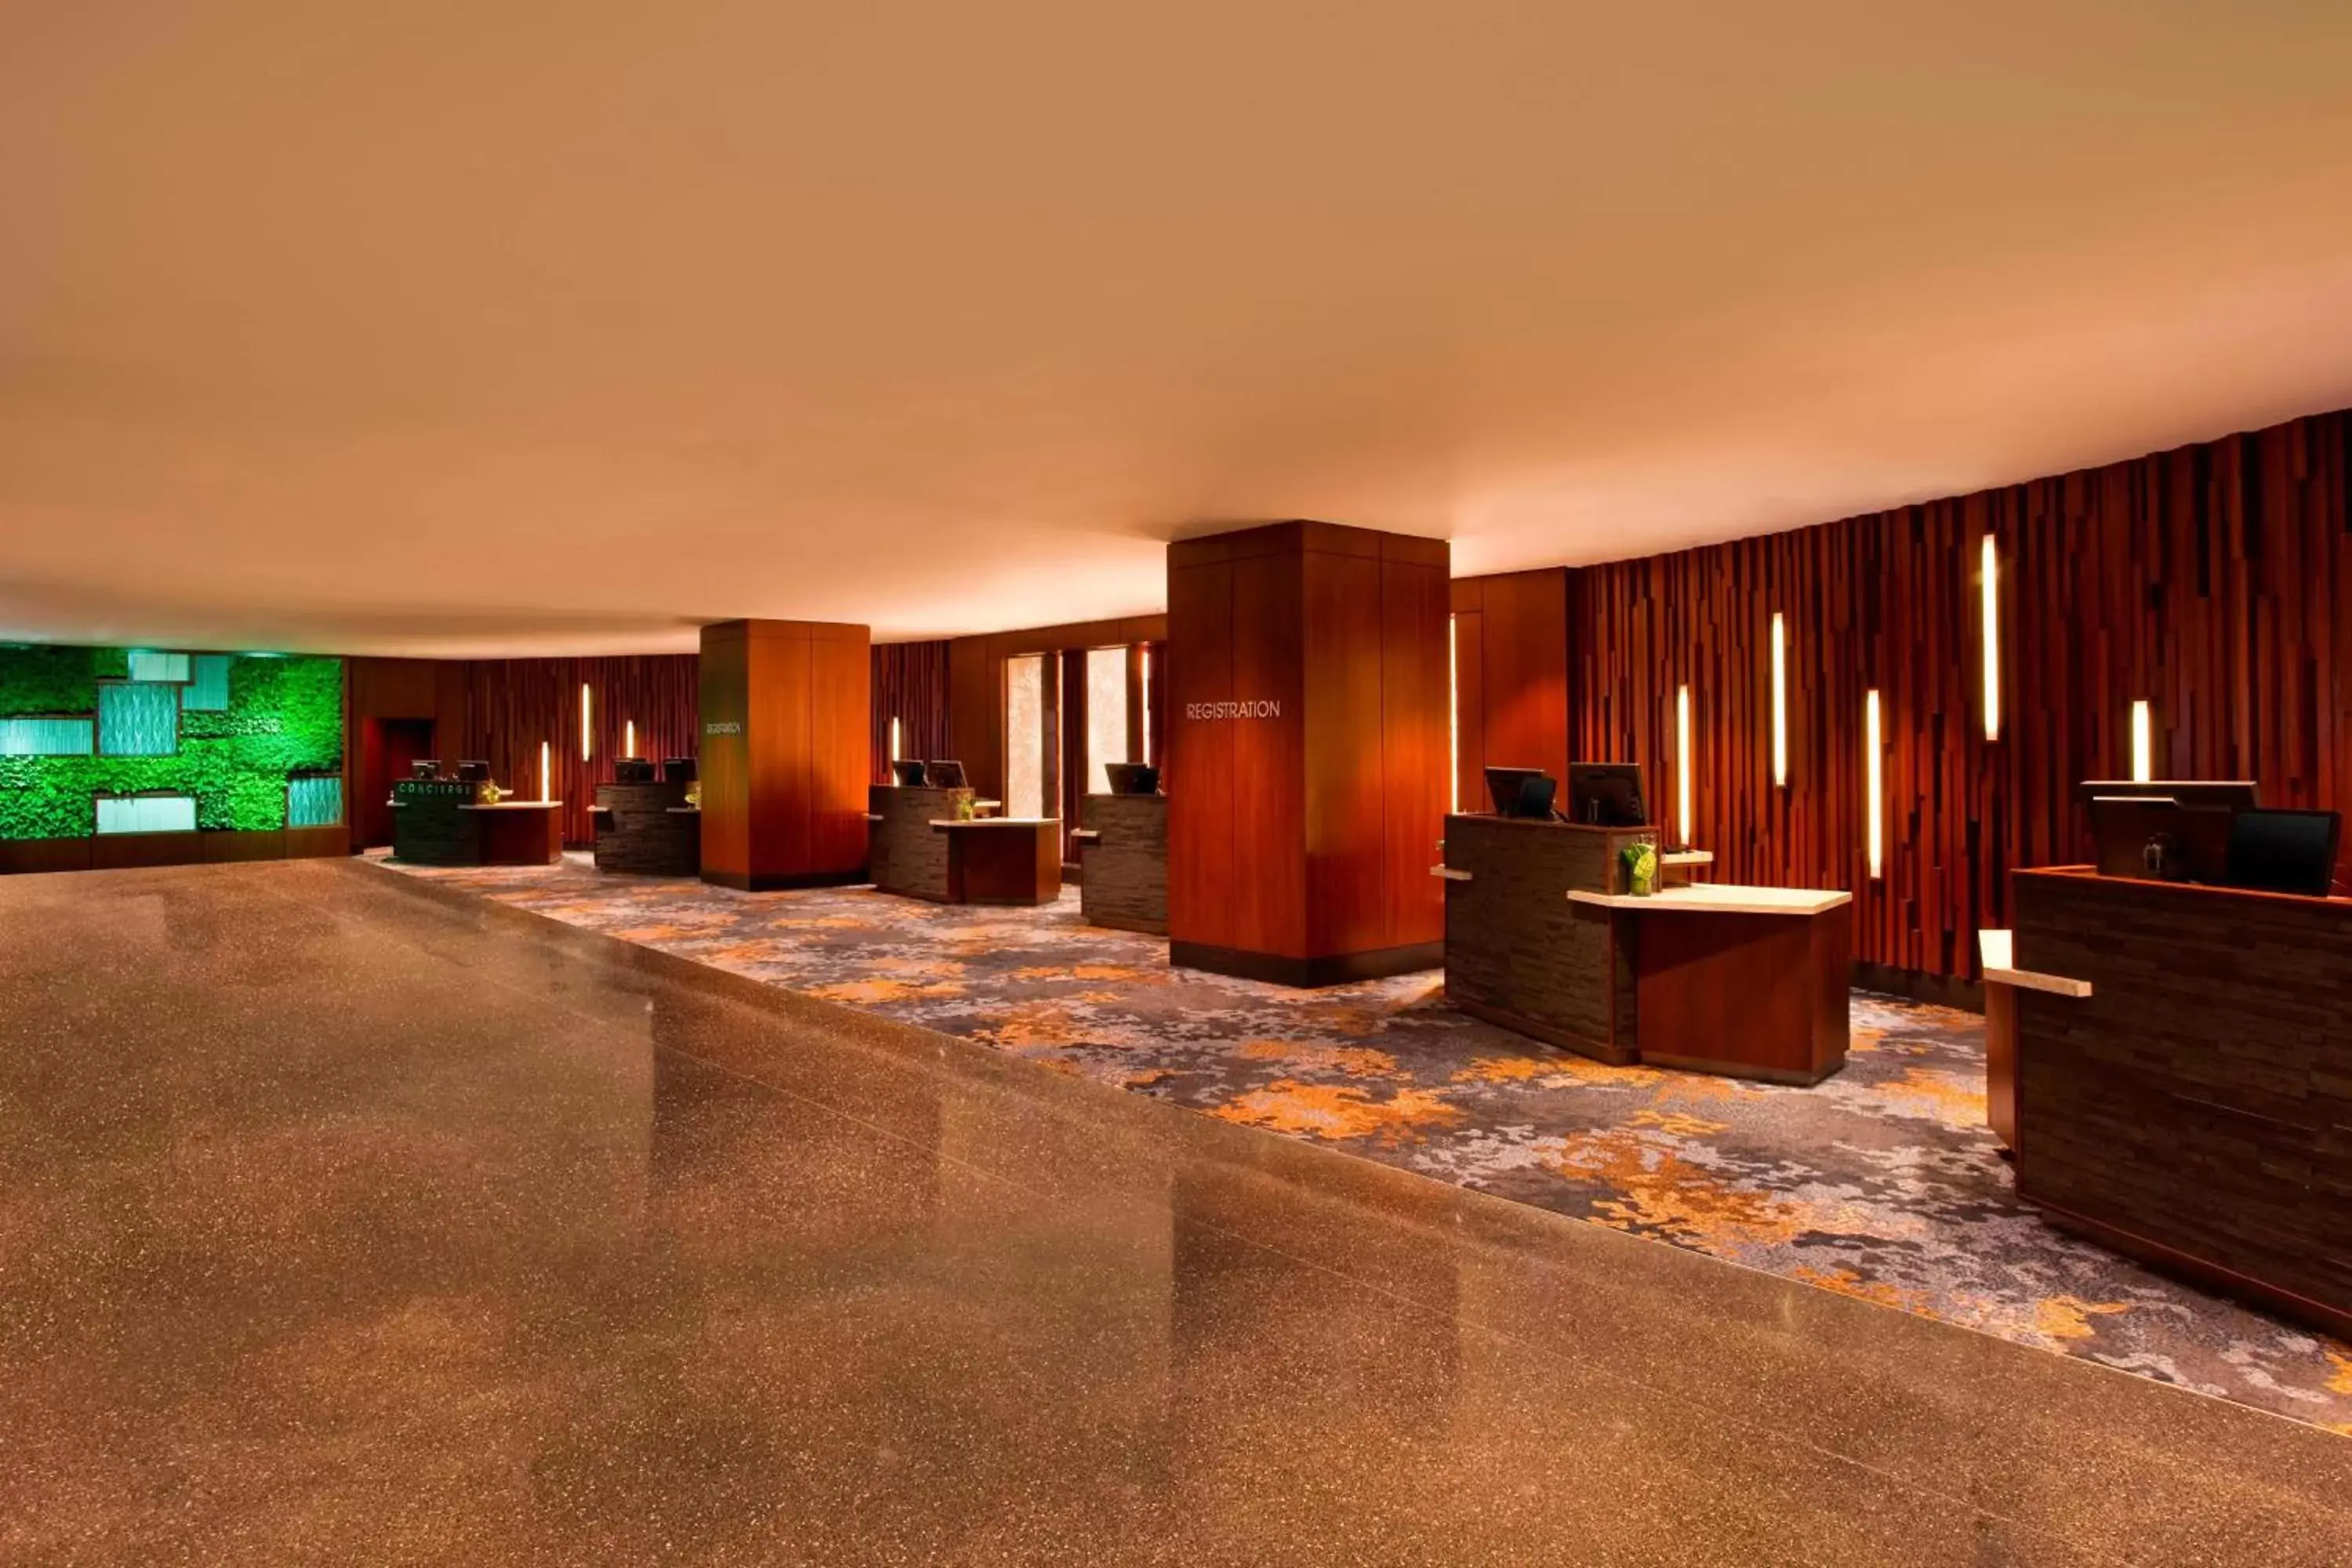 Lobby or reception in The Westin Peachtree Plaza, Atlanta